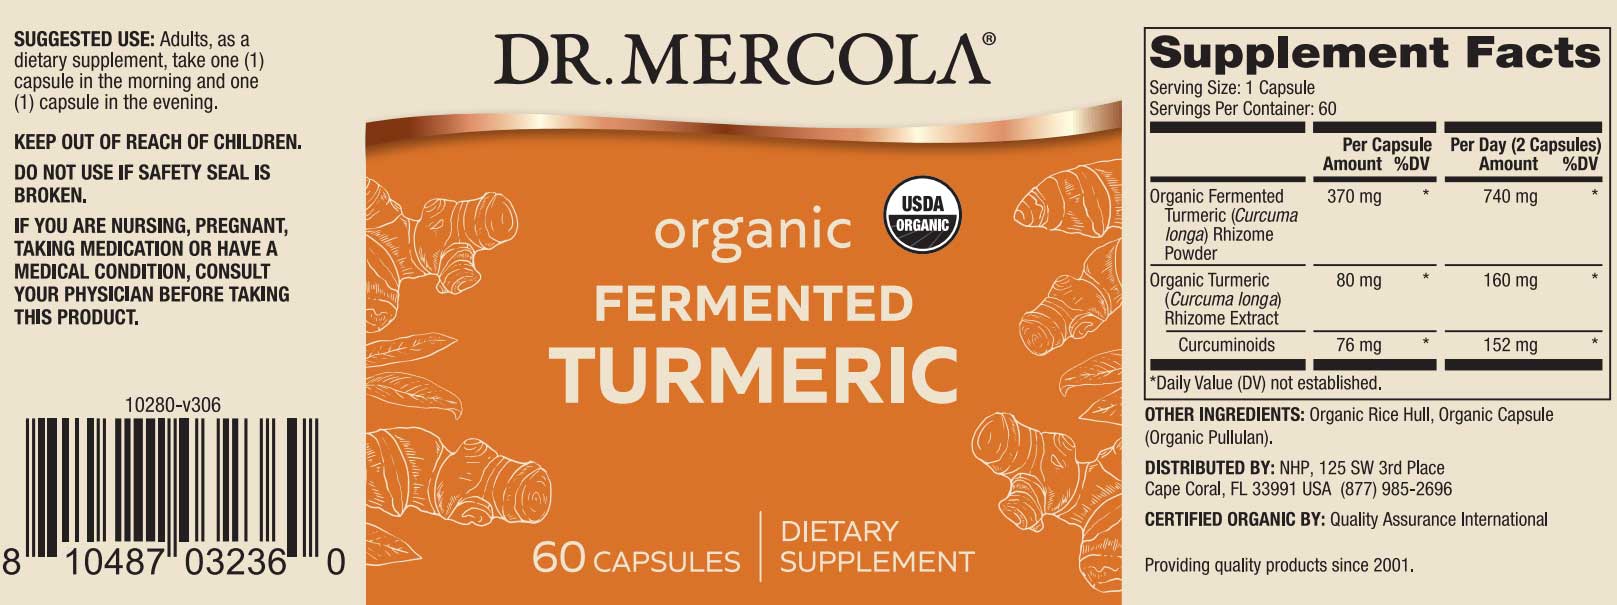 Dr. Mercola Organic Fermented Turmeric Label